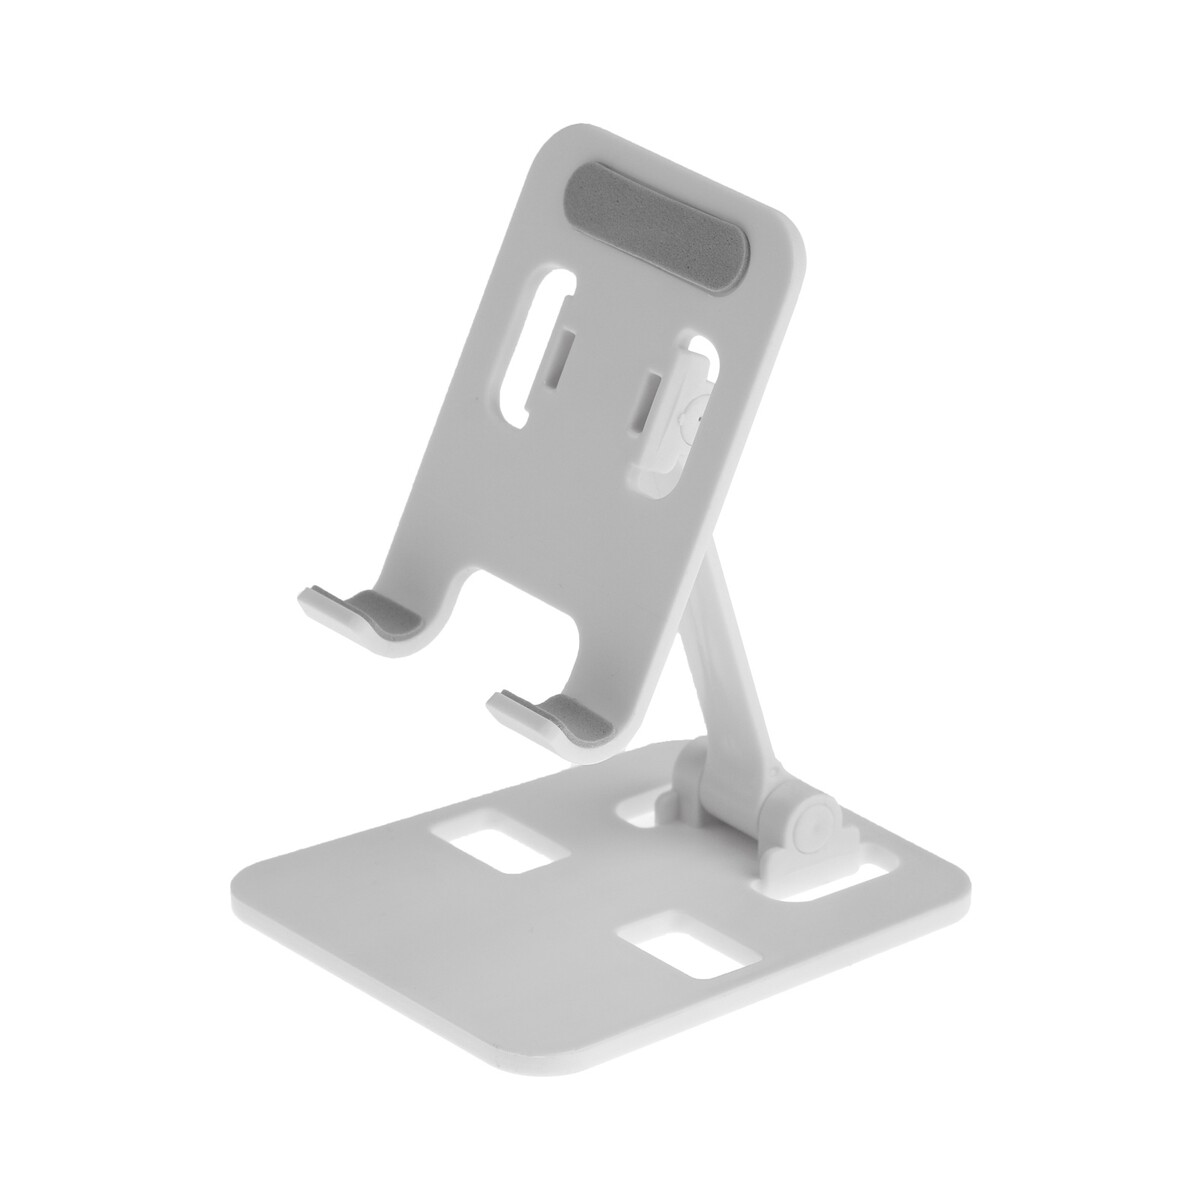 Подставка для телефона luazon, складная, регулируемая, резиновые вставки, белая подставка для планшета регулируемая складная резиновые вставки белая